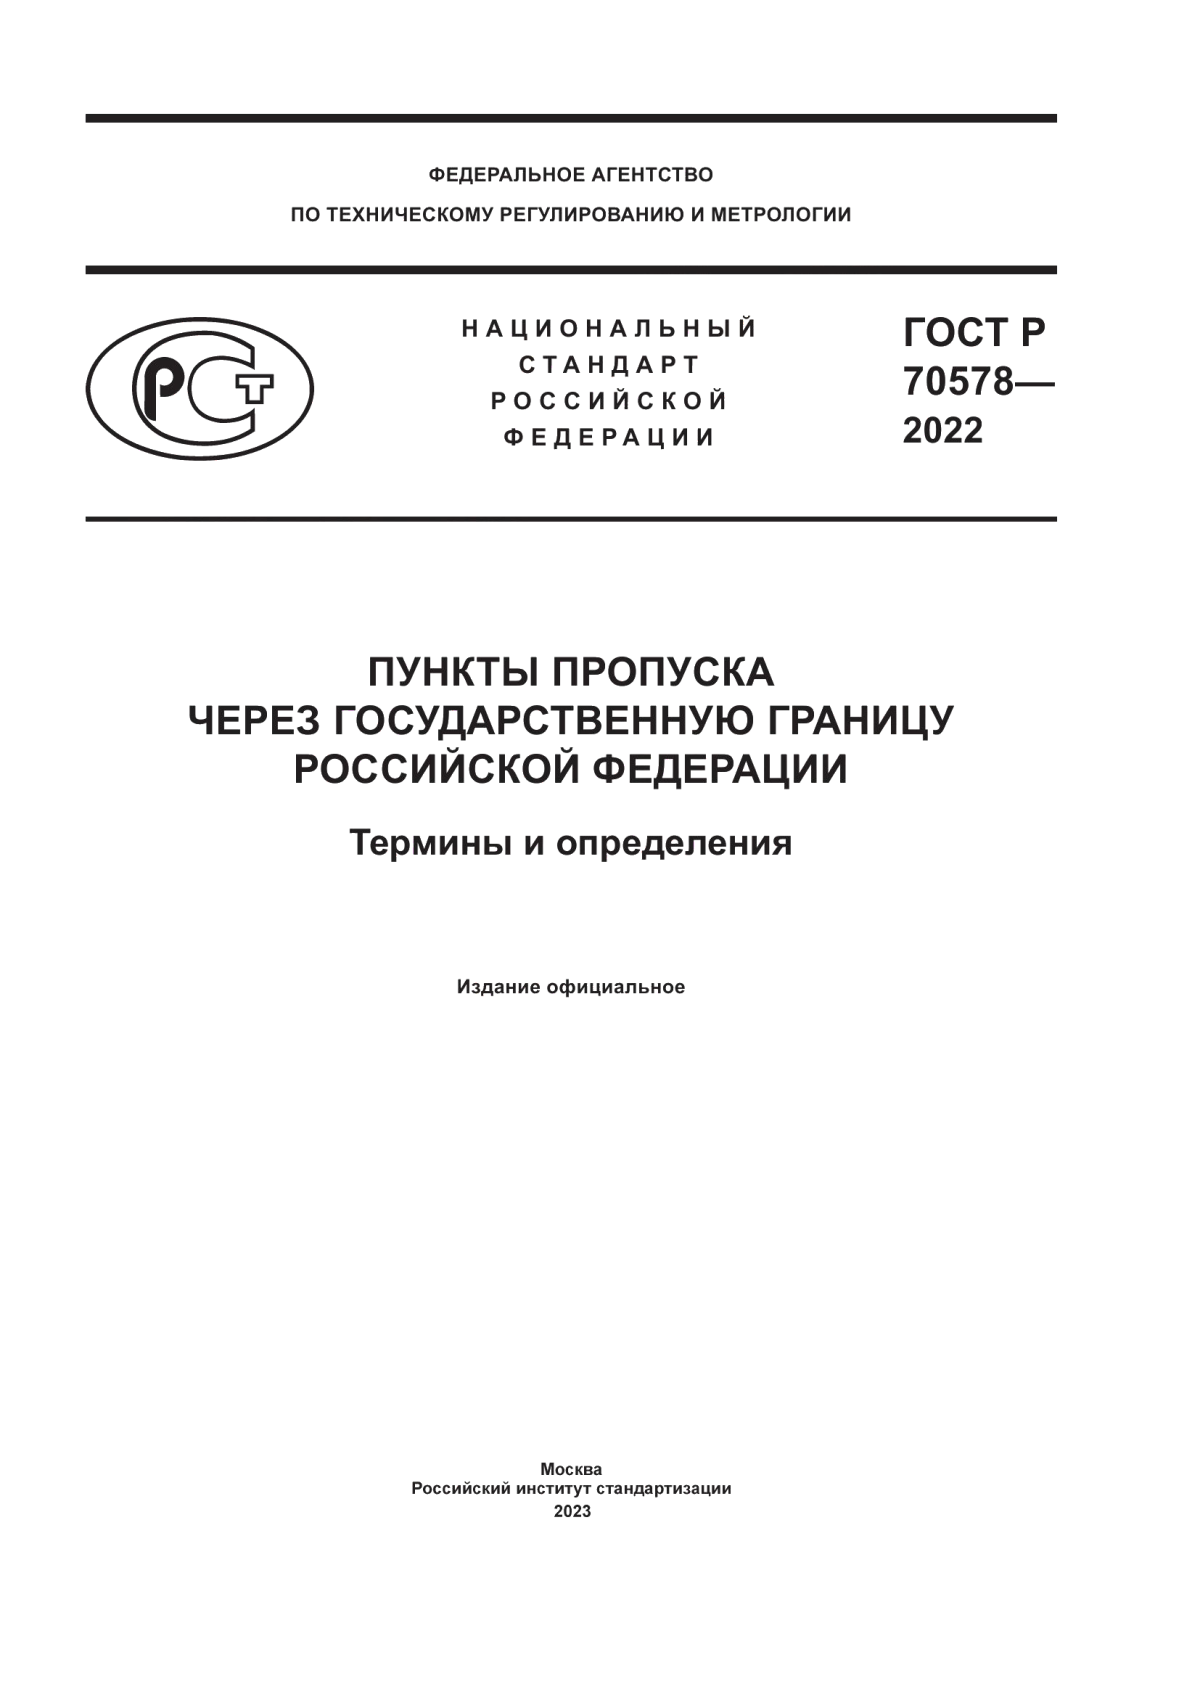 ГОСТ Р 70578-2022 Пункты пропуска через государственную границу Российской Федерации. Термины и определения